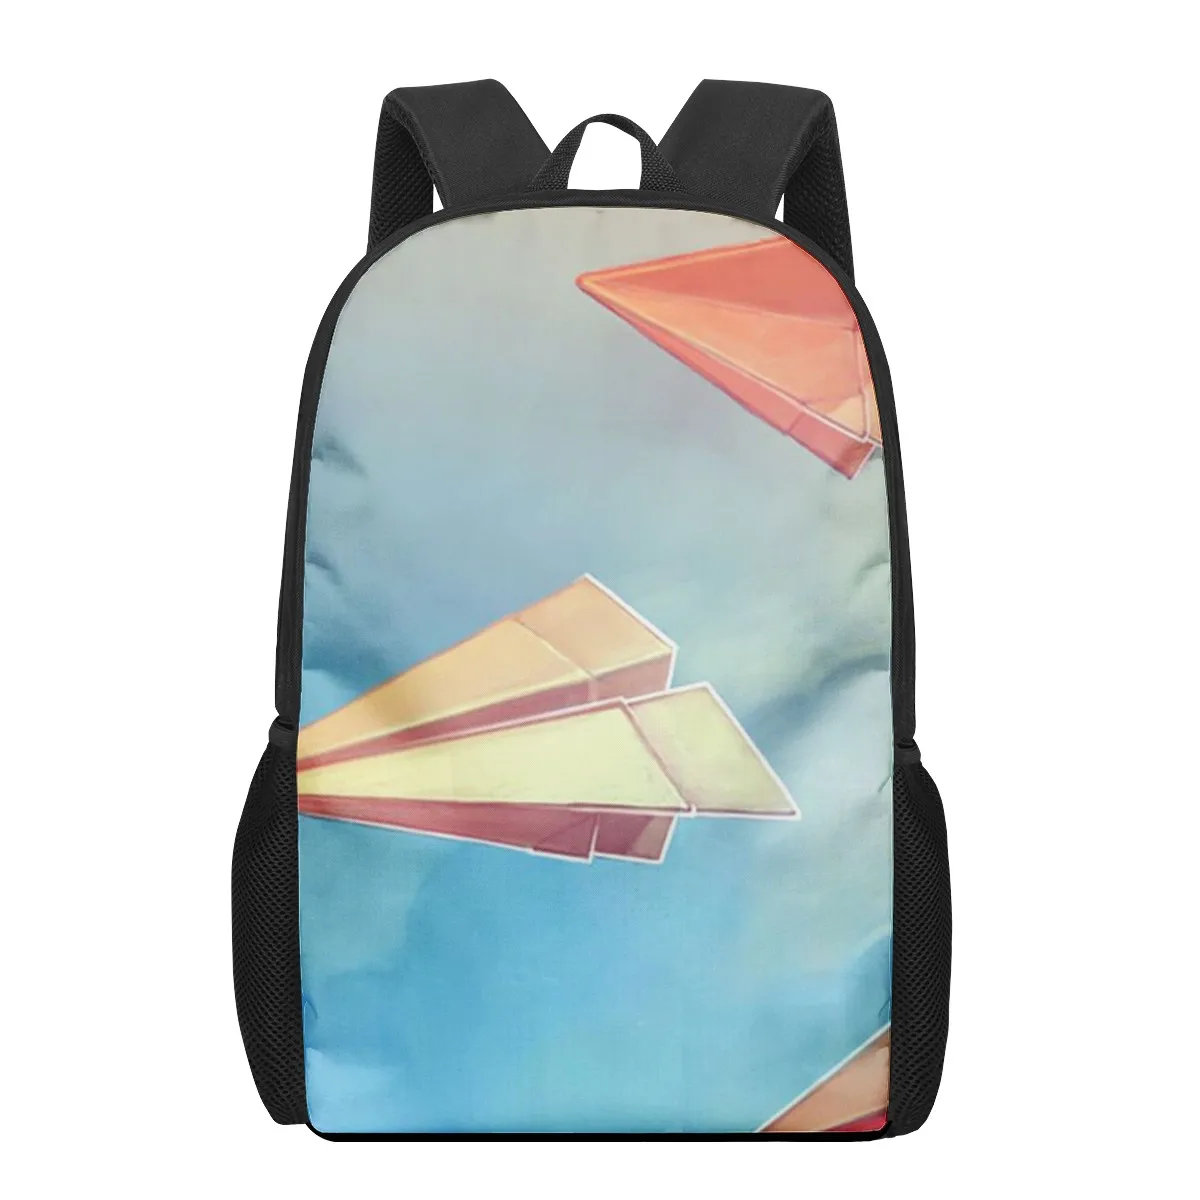 Рюкзак большой вместимости для девочек, с рисунком летательного аппарата и неба